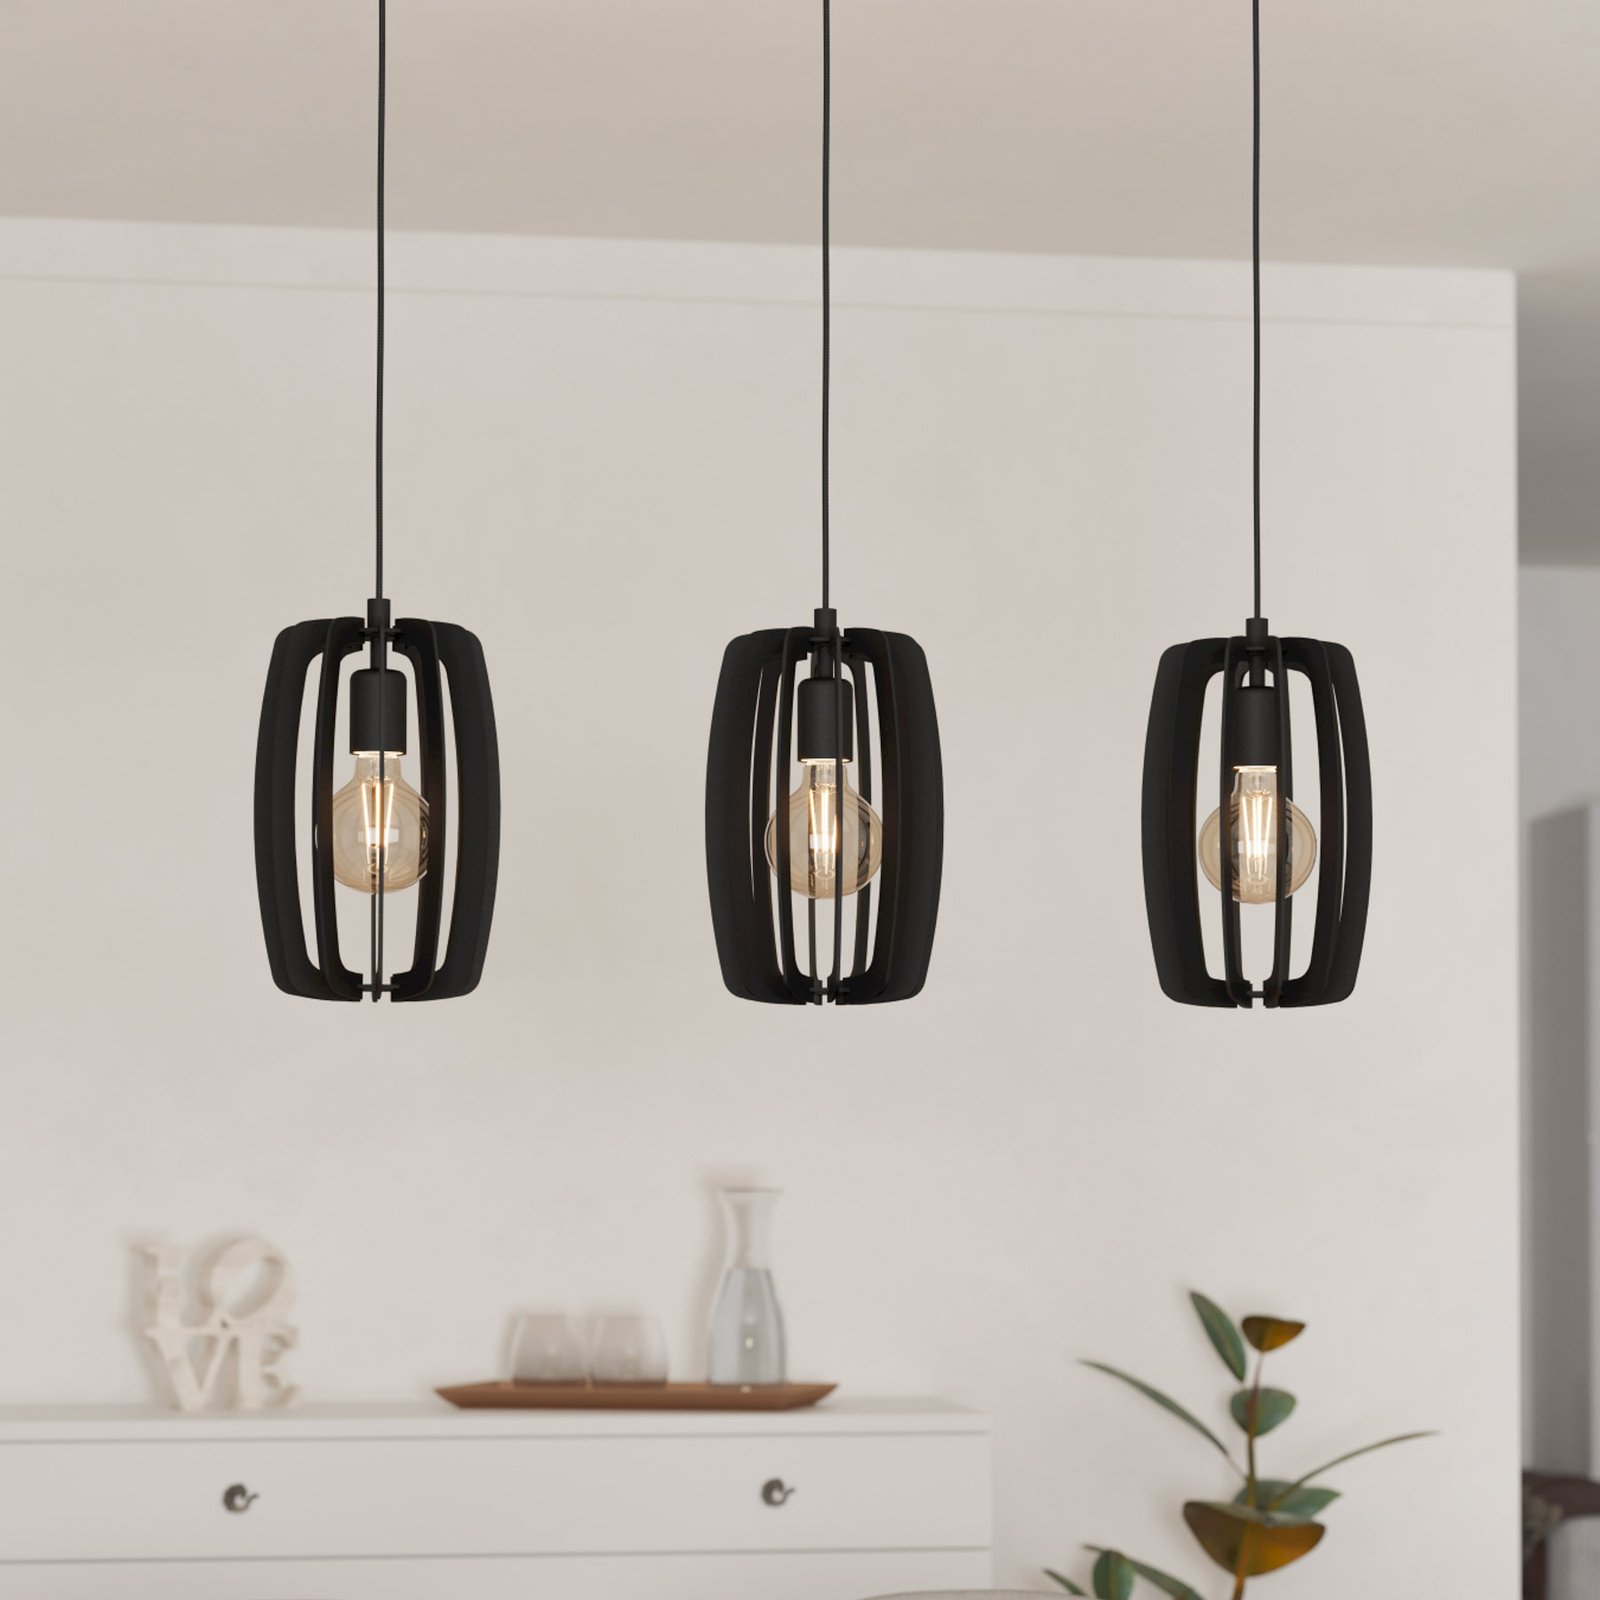 Bajazzara hanglamp, drie kooikappen, zwart